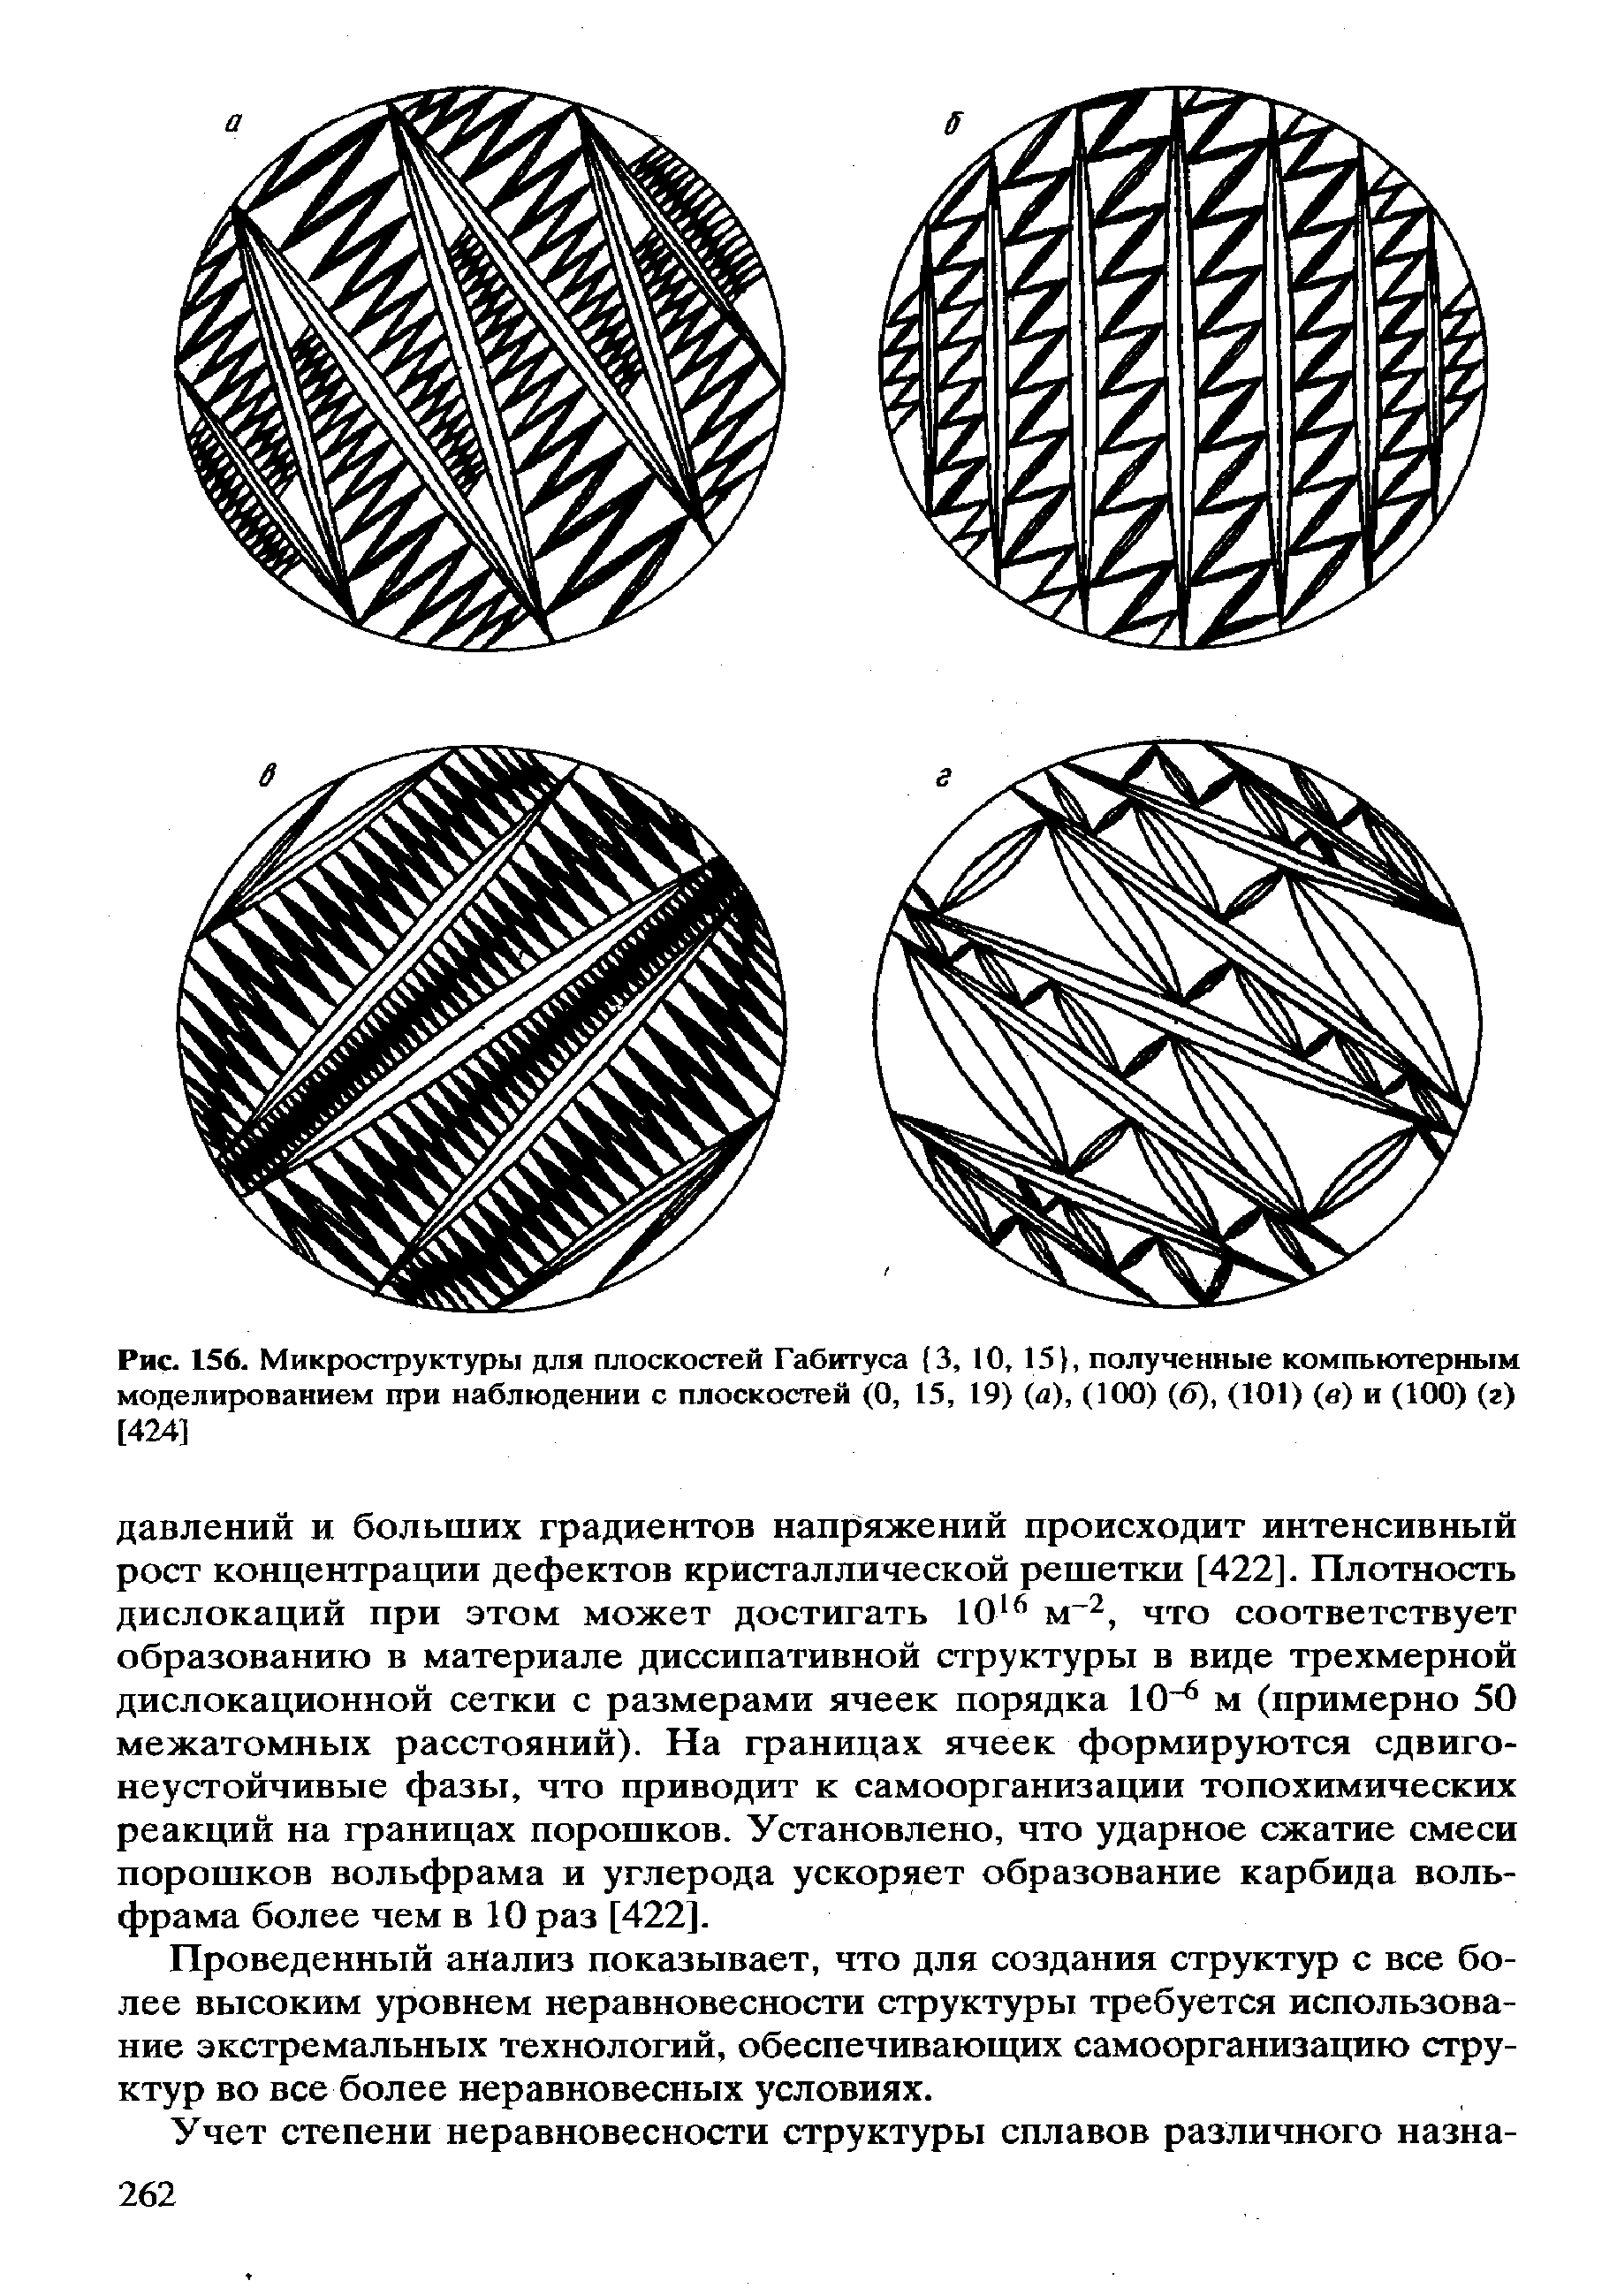 Рис. 156. Микроструктуры для плоскостей Габитуса (3, 10, 15 , полученные компьютерным моделированием при наблюдении с плоскостей (О, 15, 19) (а), (100) (б), (101) (в) и (100) (г) [424]
